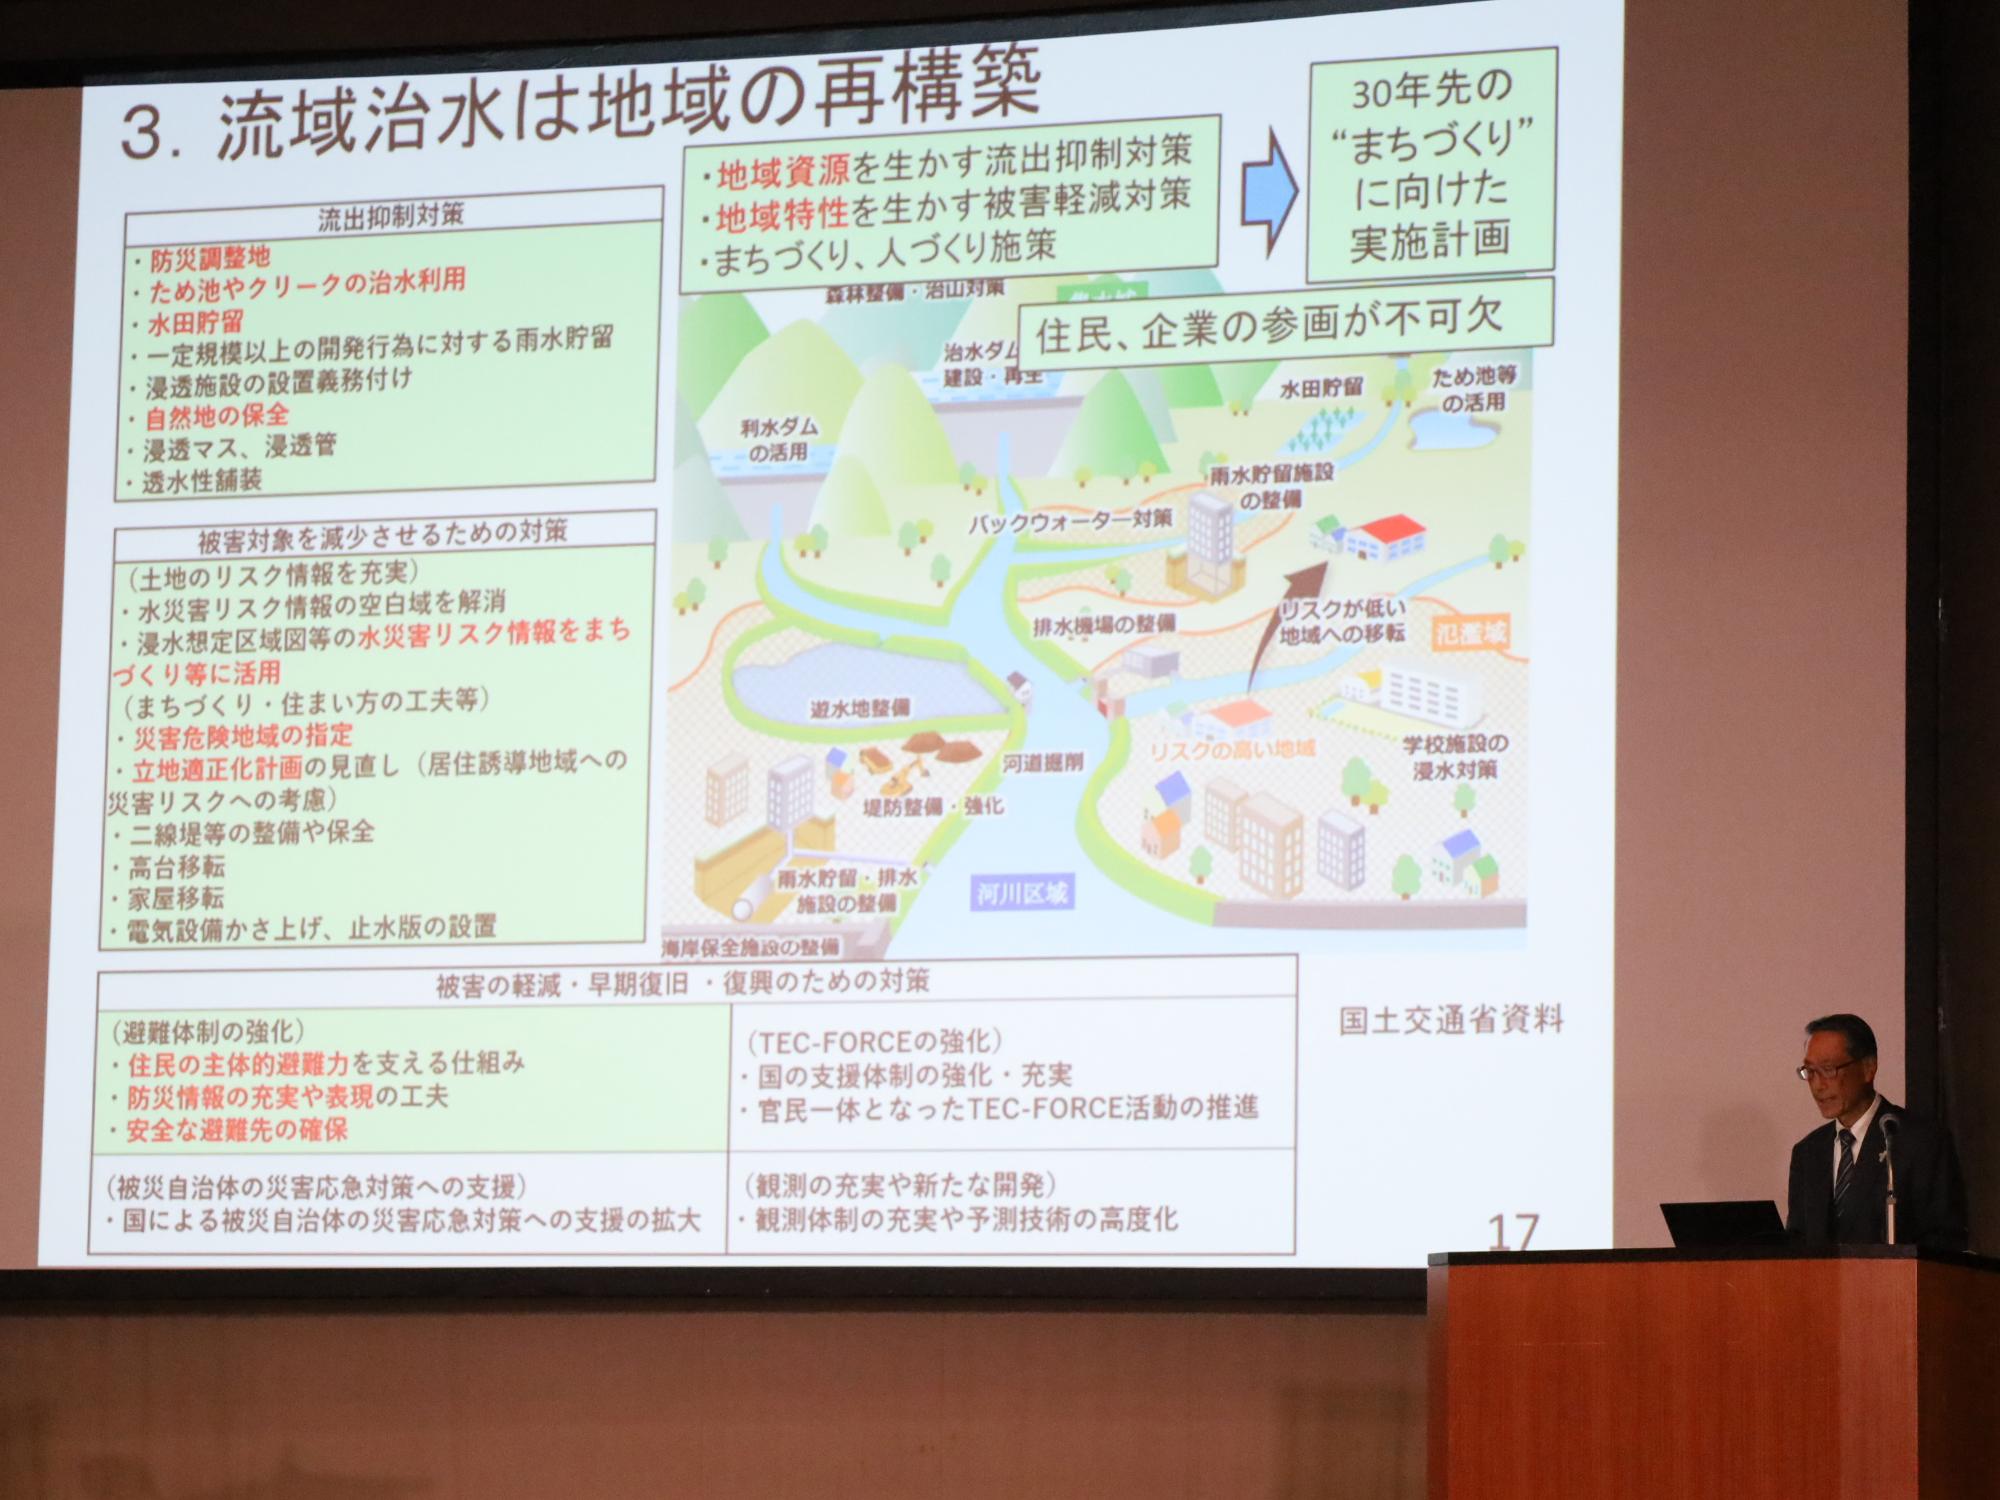 福島県流域治水シンポジウムでの基調講演の様子